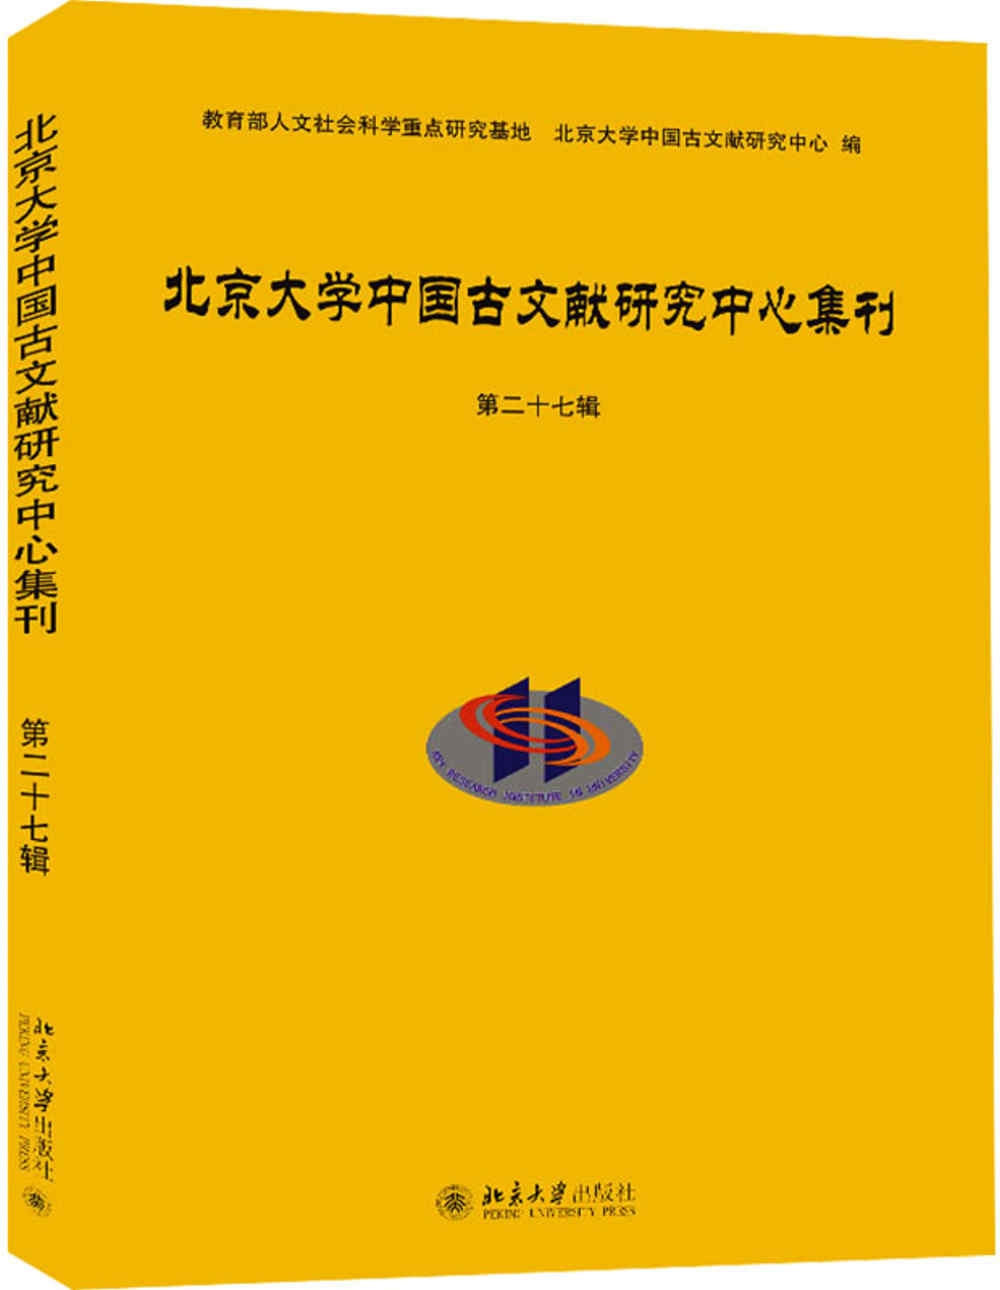 北京大學中國古文獻研究中心集刊（第二十七輯）